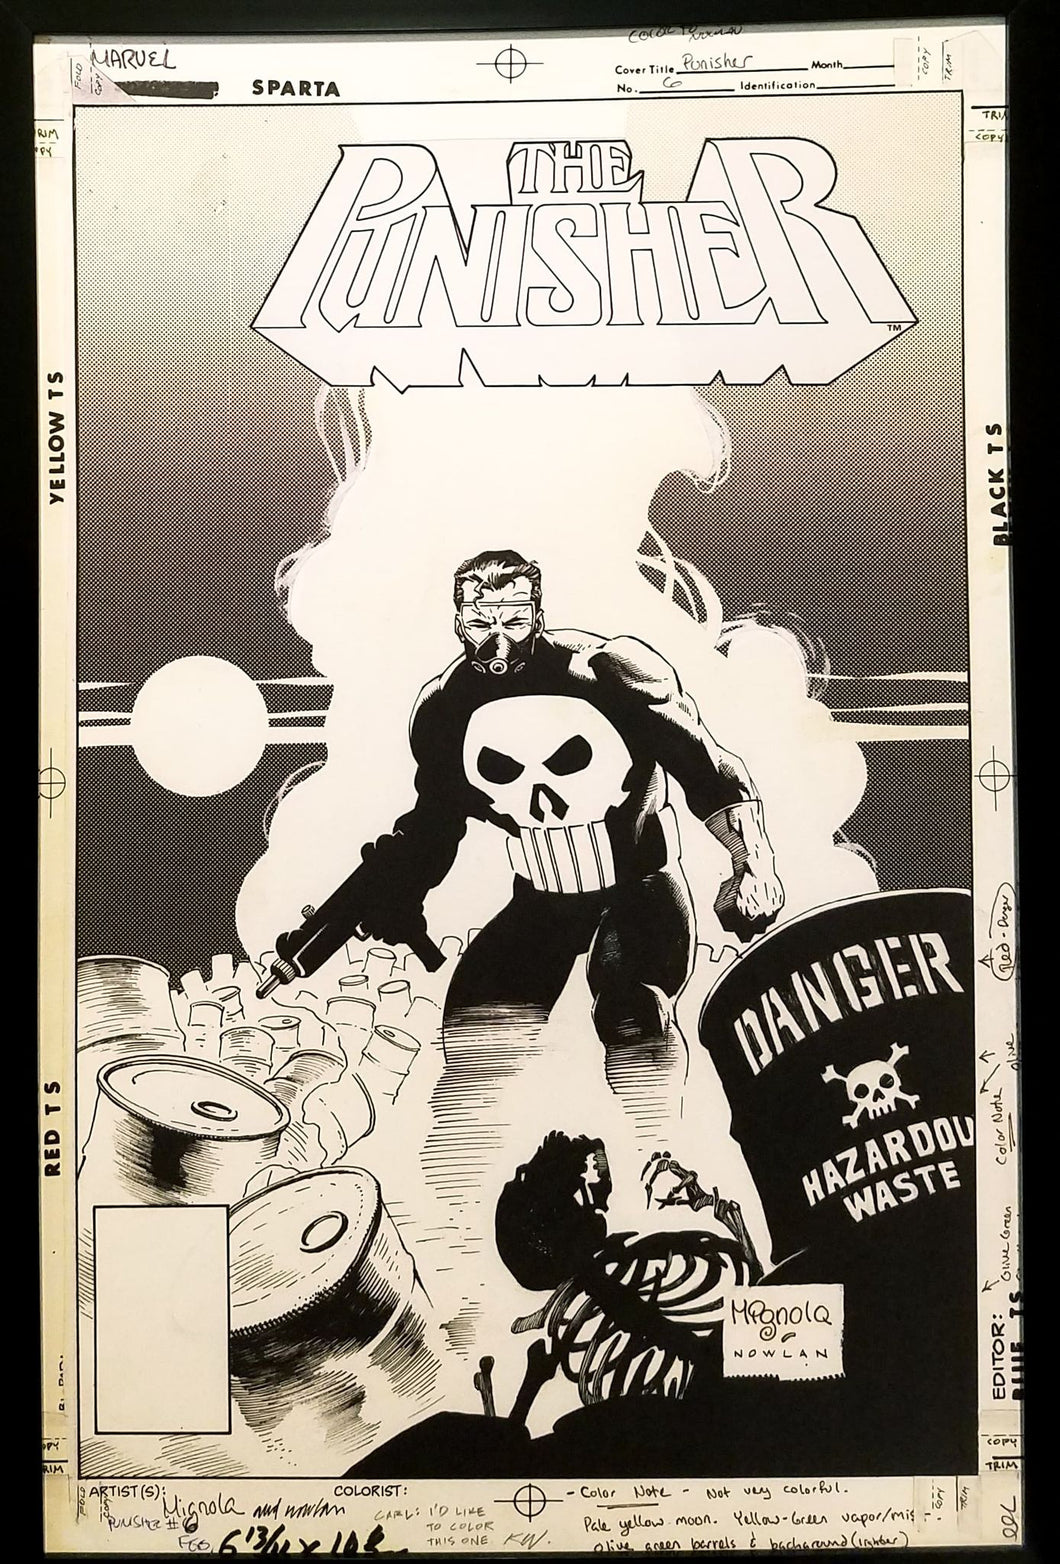 Punisher #6 by Mike Mignola 11x17 FRAMED Original Art Poster Marvel Comics